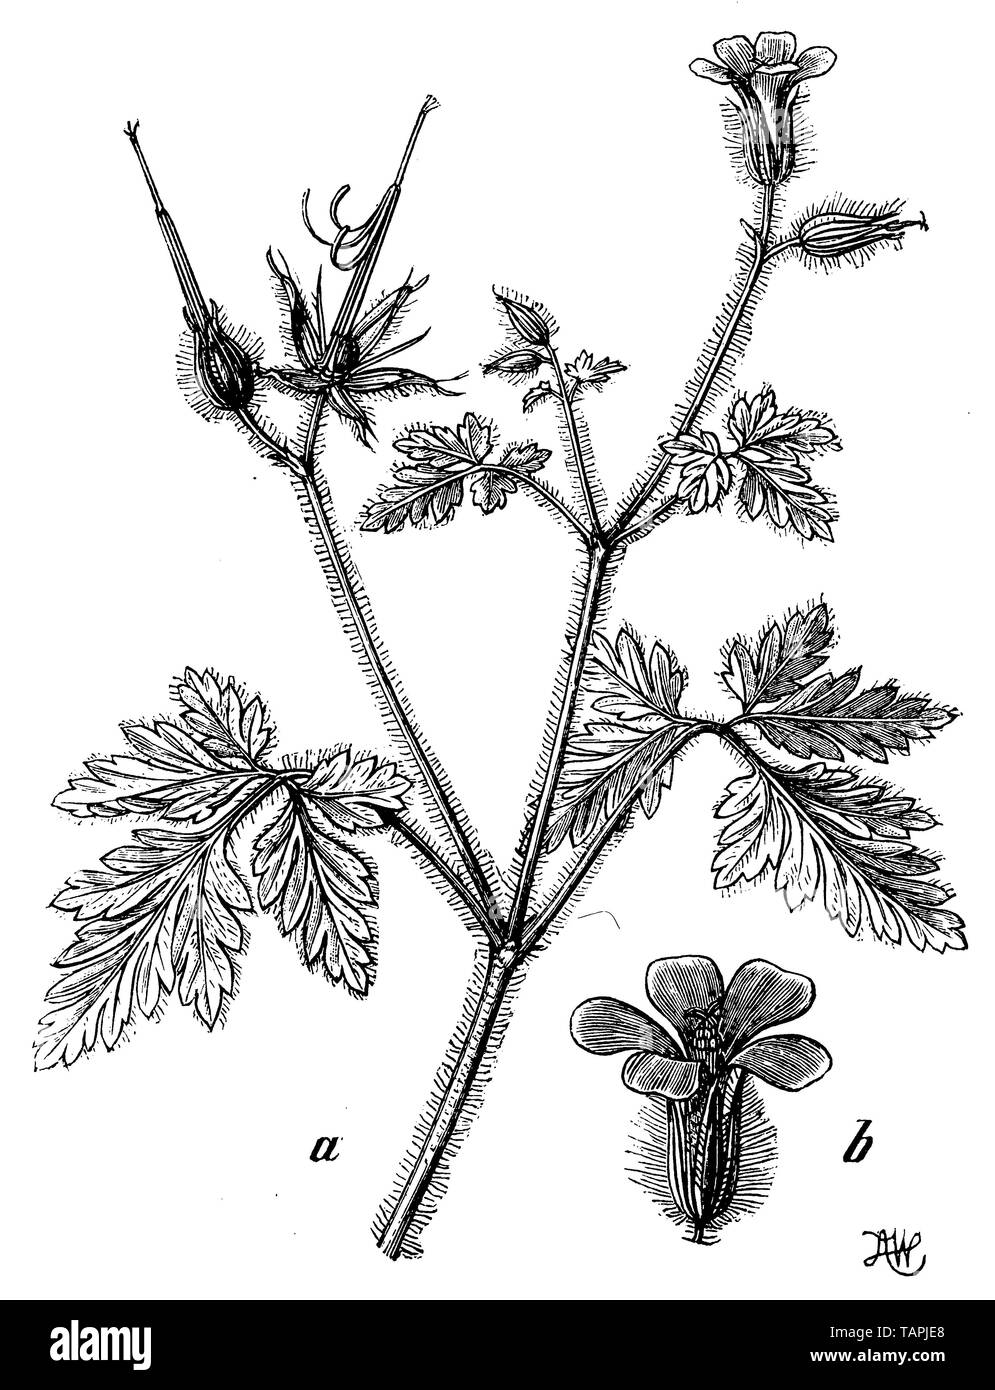 herb-Robert or Roberts geranium, Geranium Robertianum, A W (botany book, 1898) Stock Photo